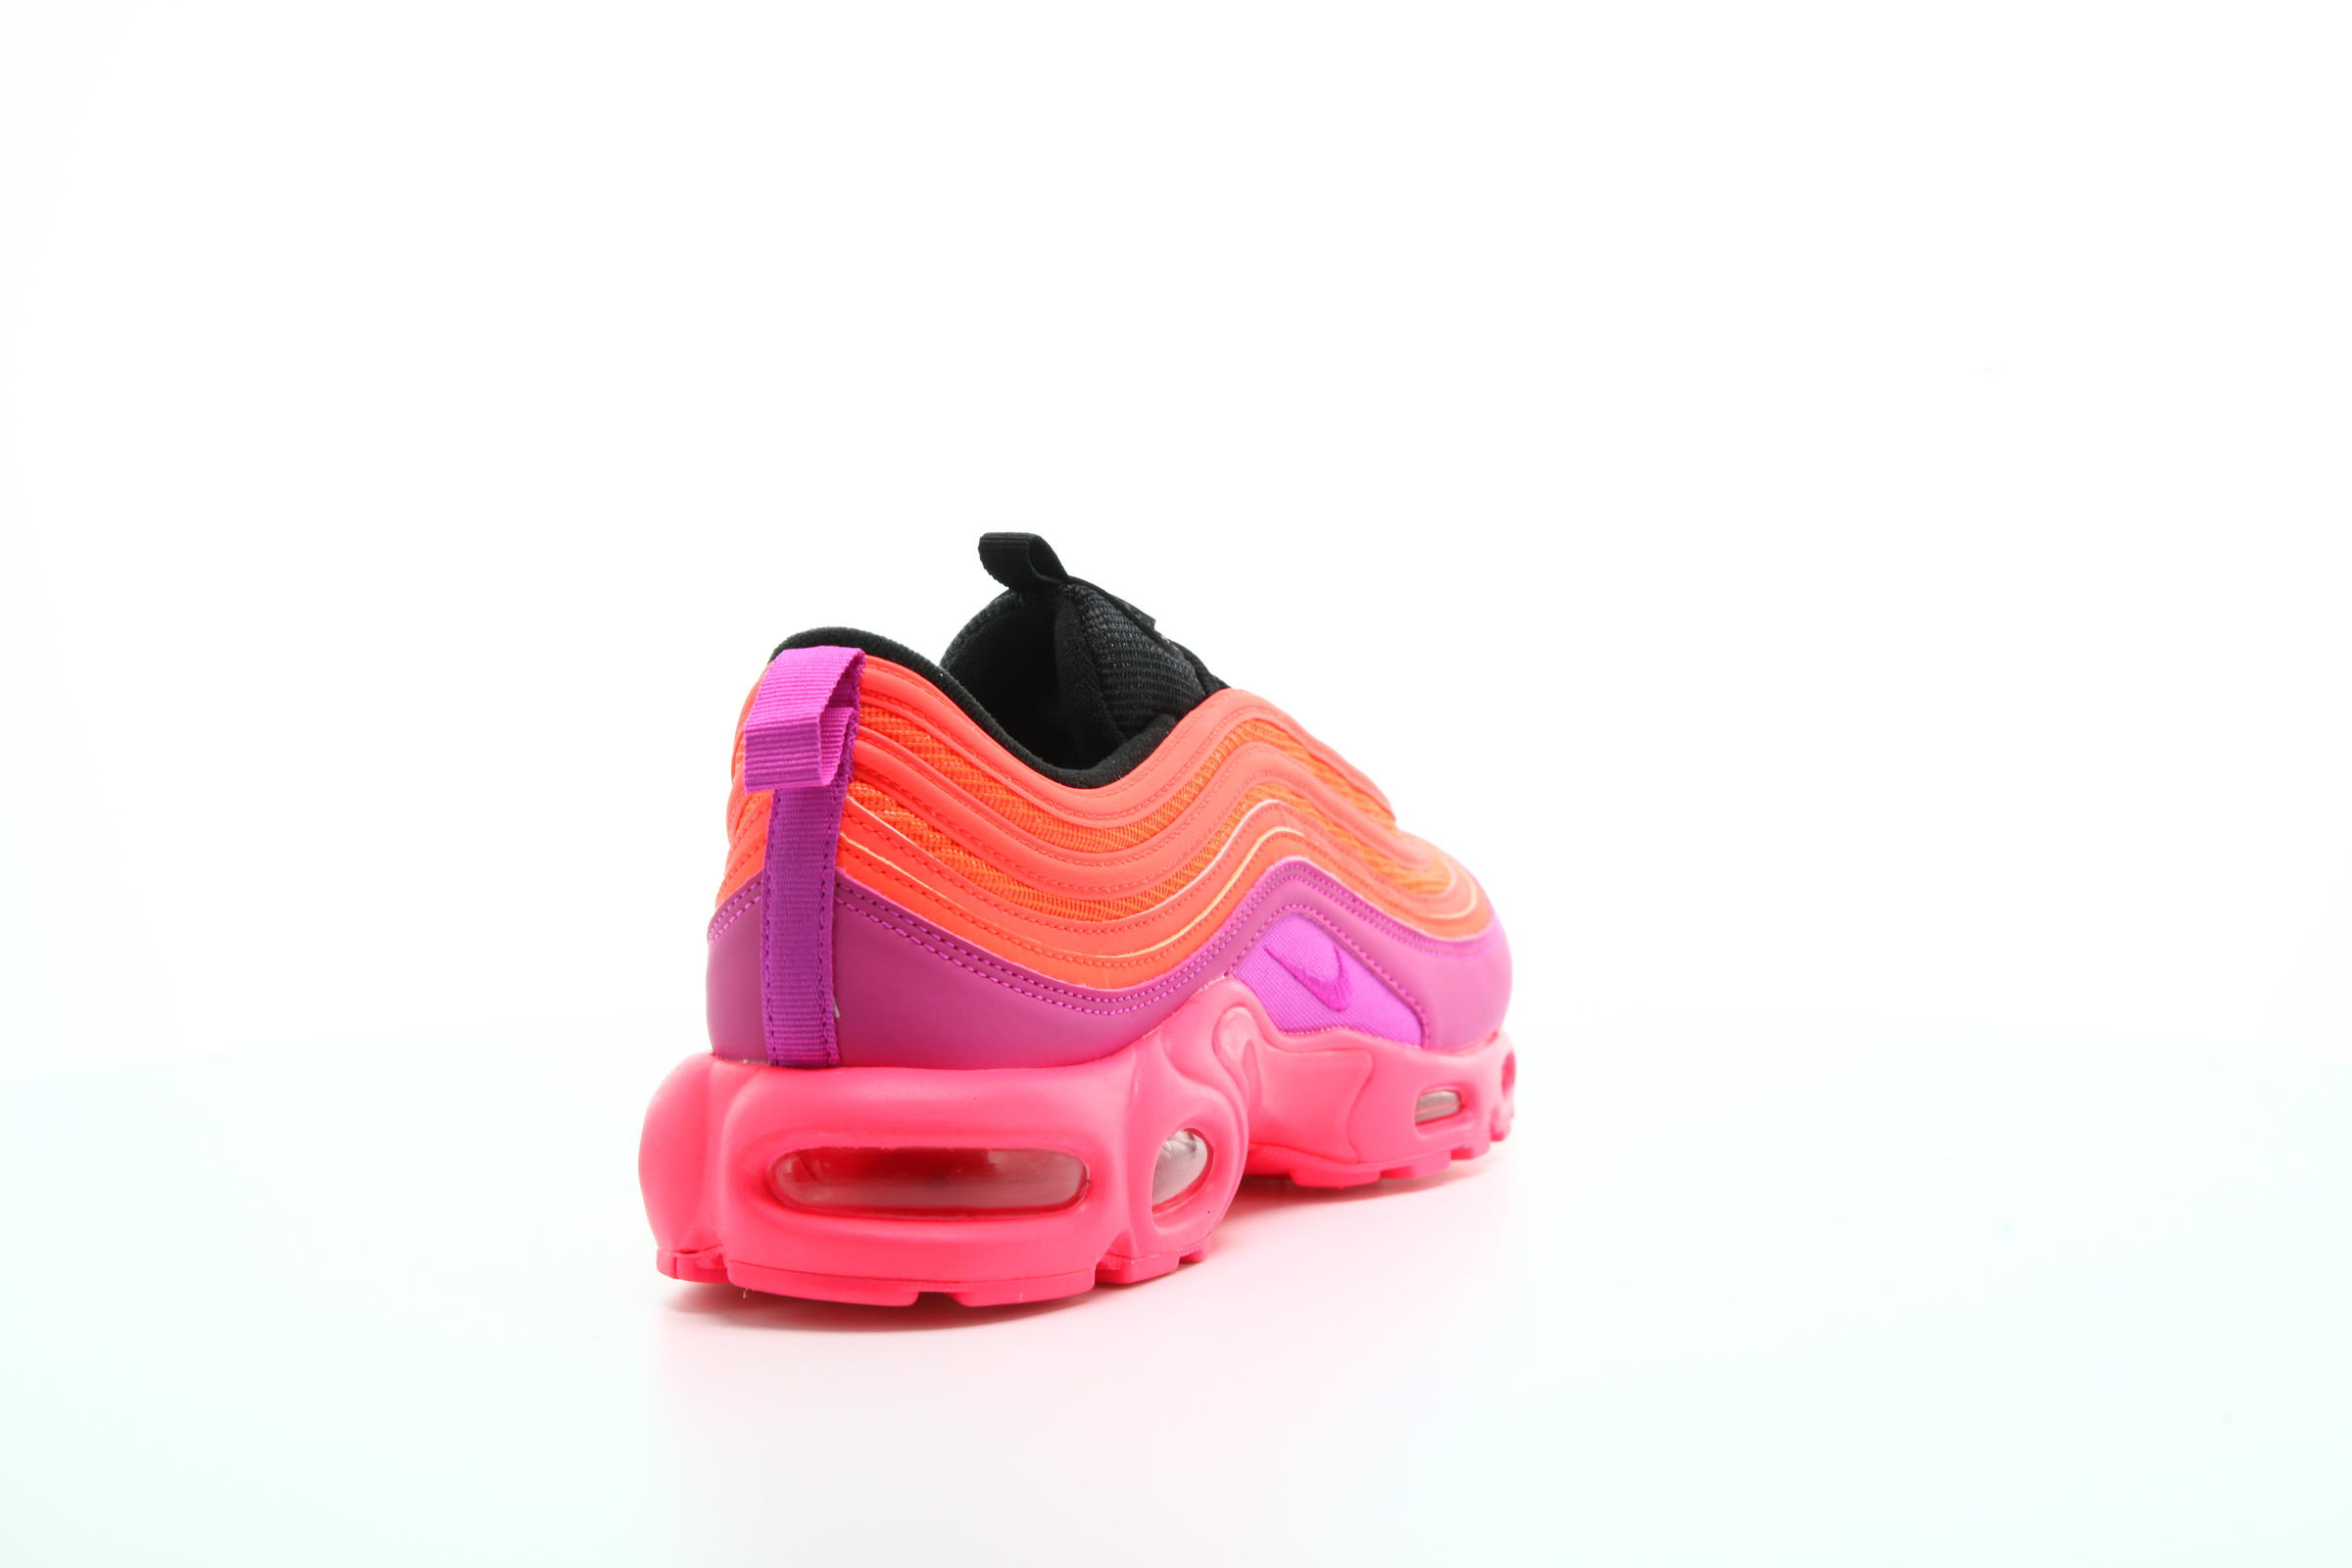 Nike Air Max Plus 97 "Racer Pink"